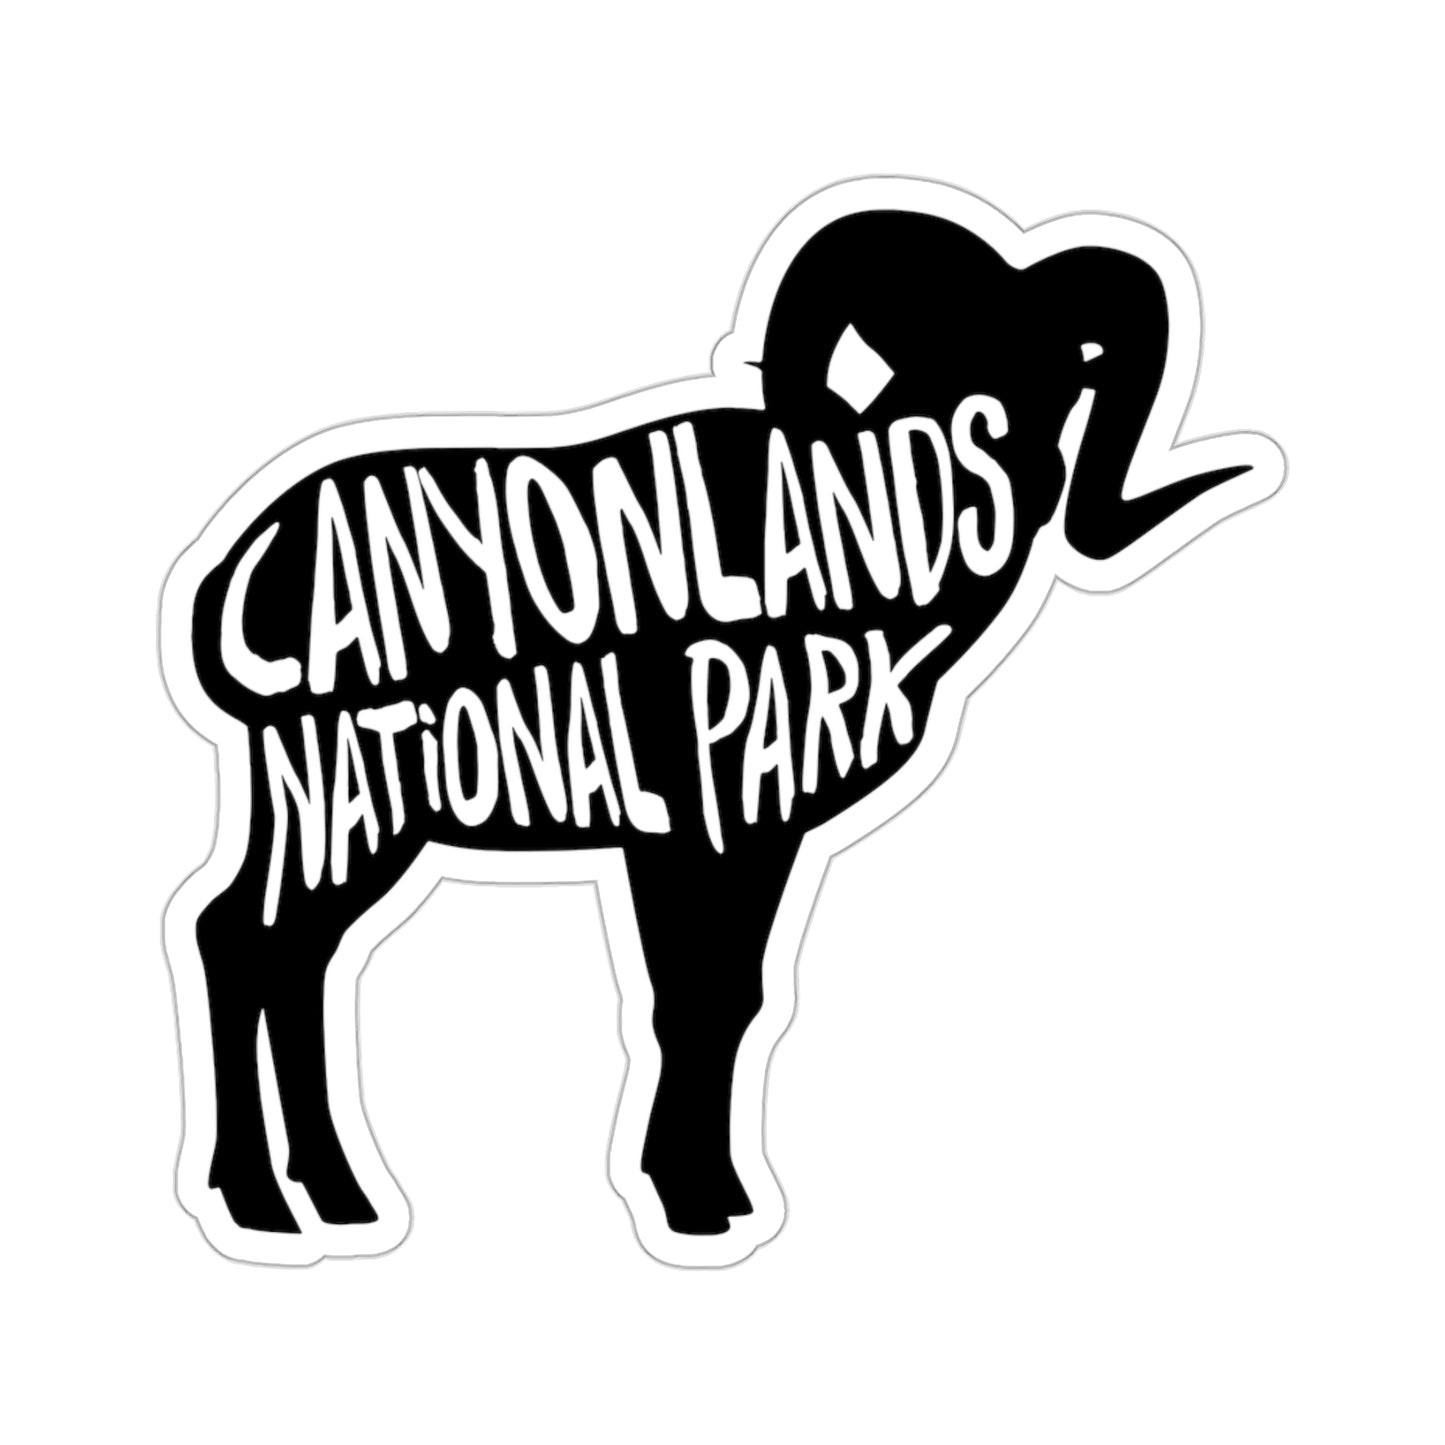 Canyonlands National Park Sticker - Bighorn Sheep